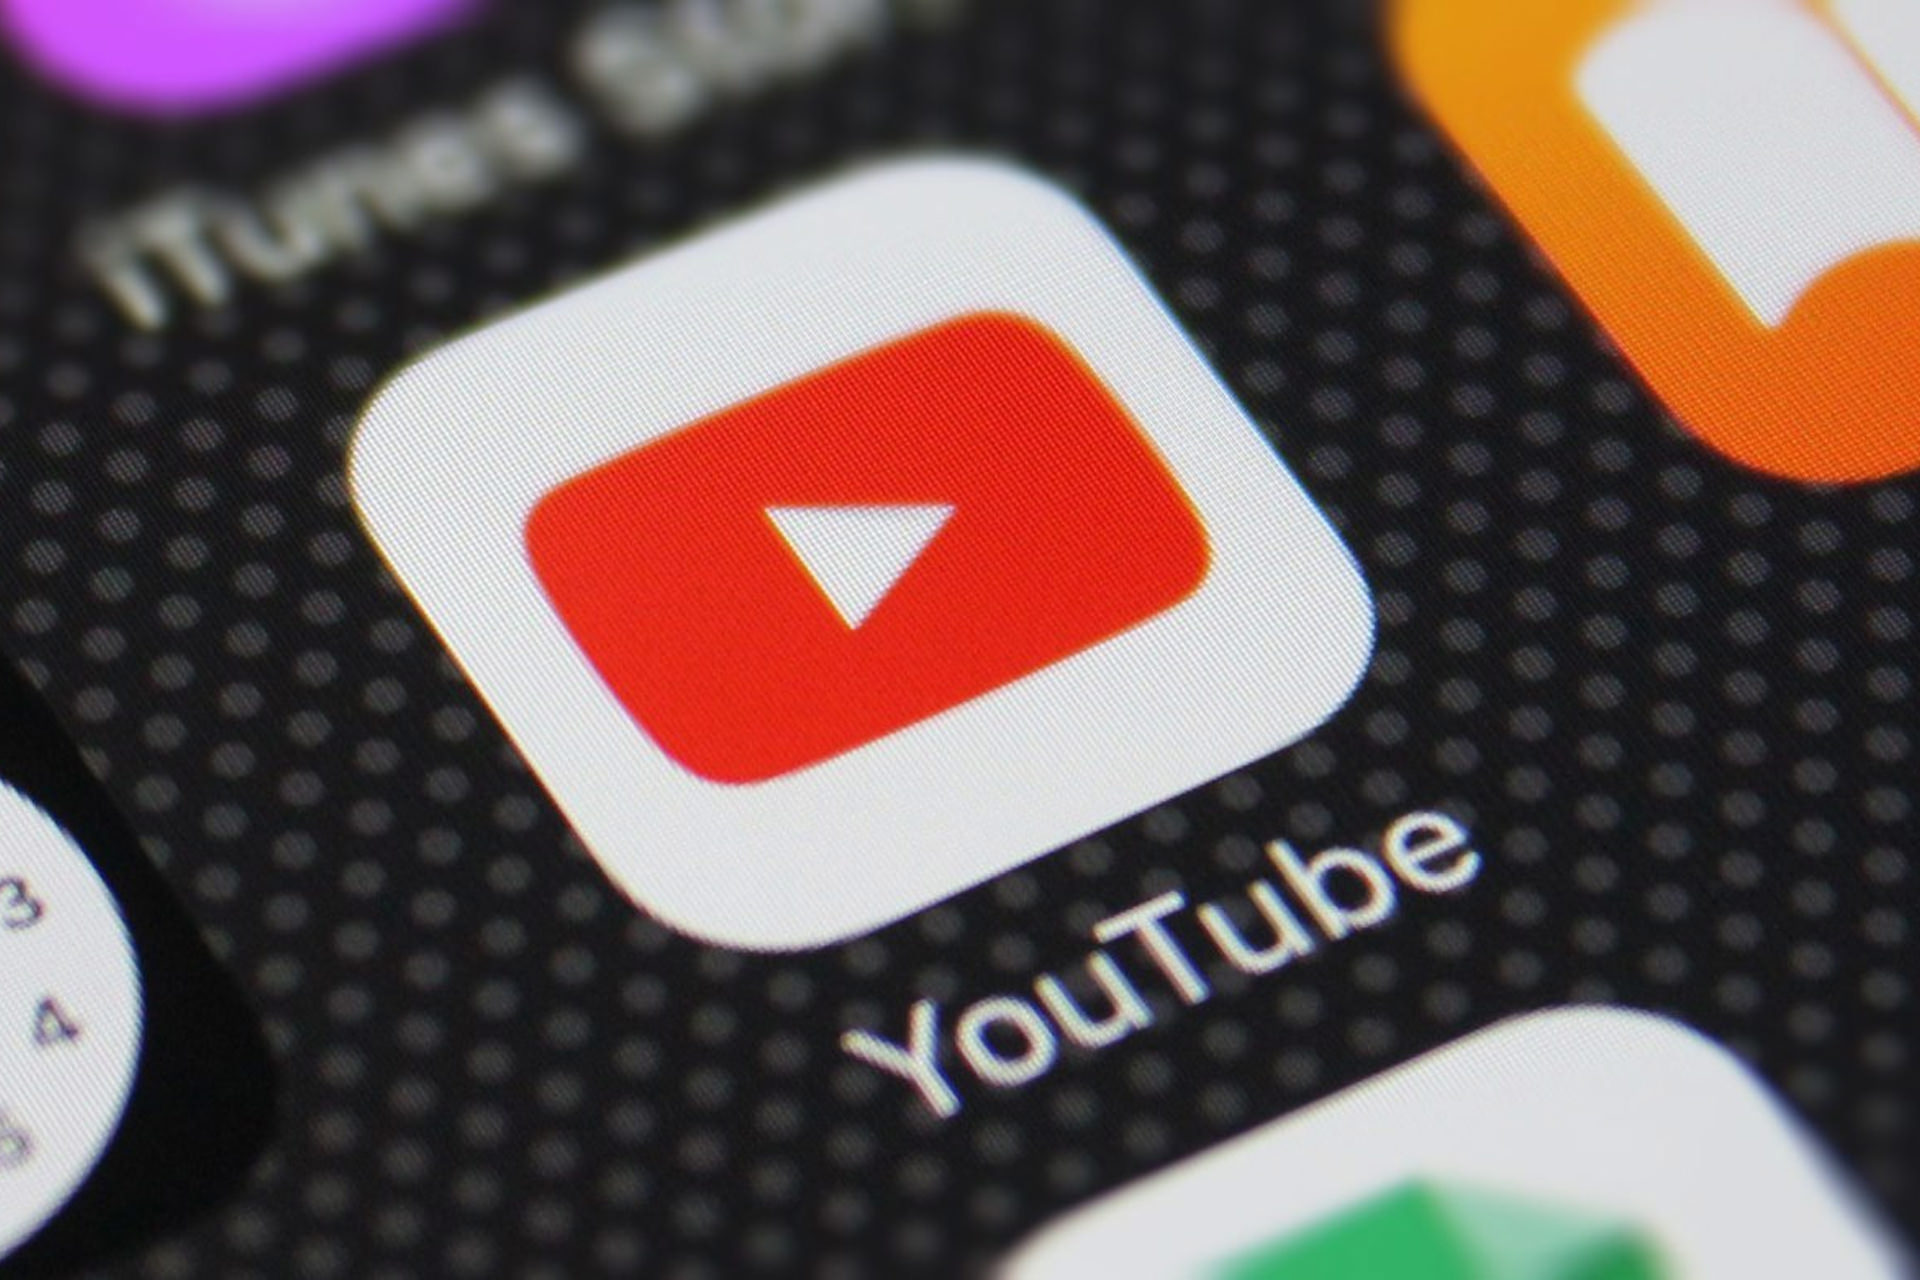 یوتیوب تماشای ویدئو با وضوح 4K را برای کاربران عادی غیرممکن کرد